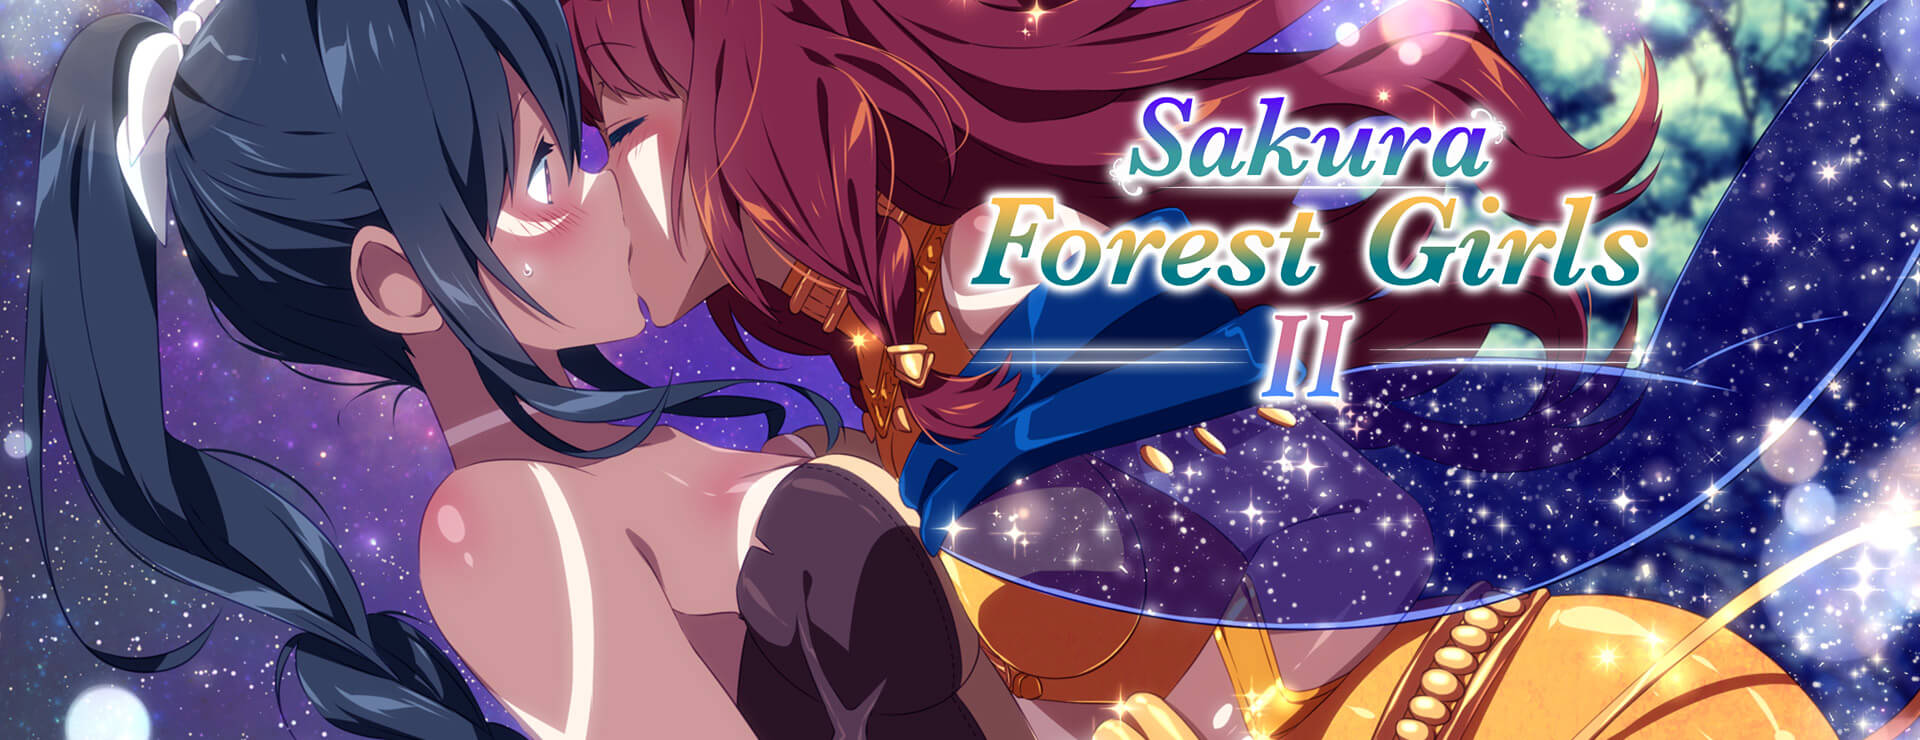 Sakura Forest Girls 2 - ビジュアルノベル ゲーム